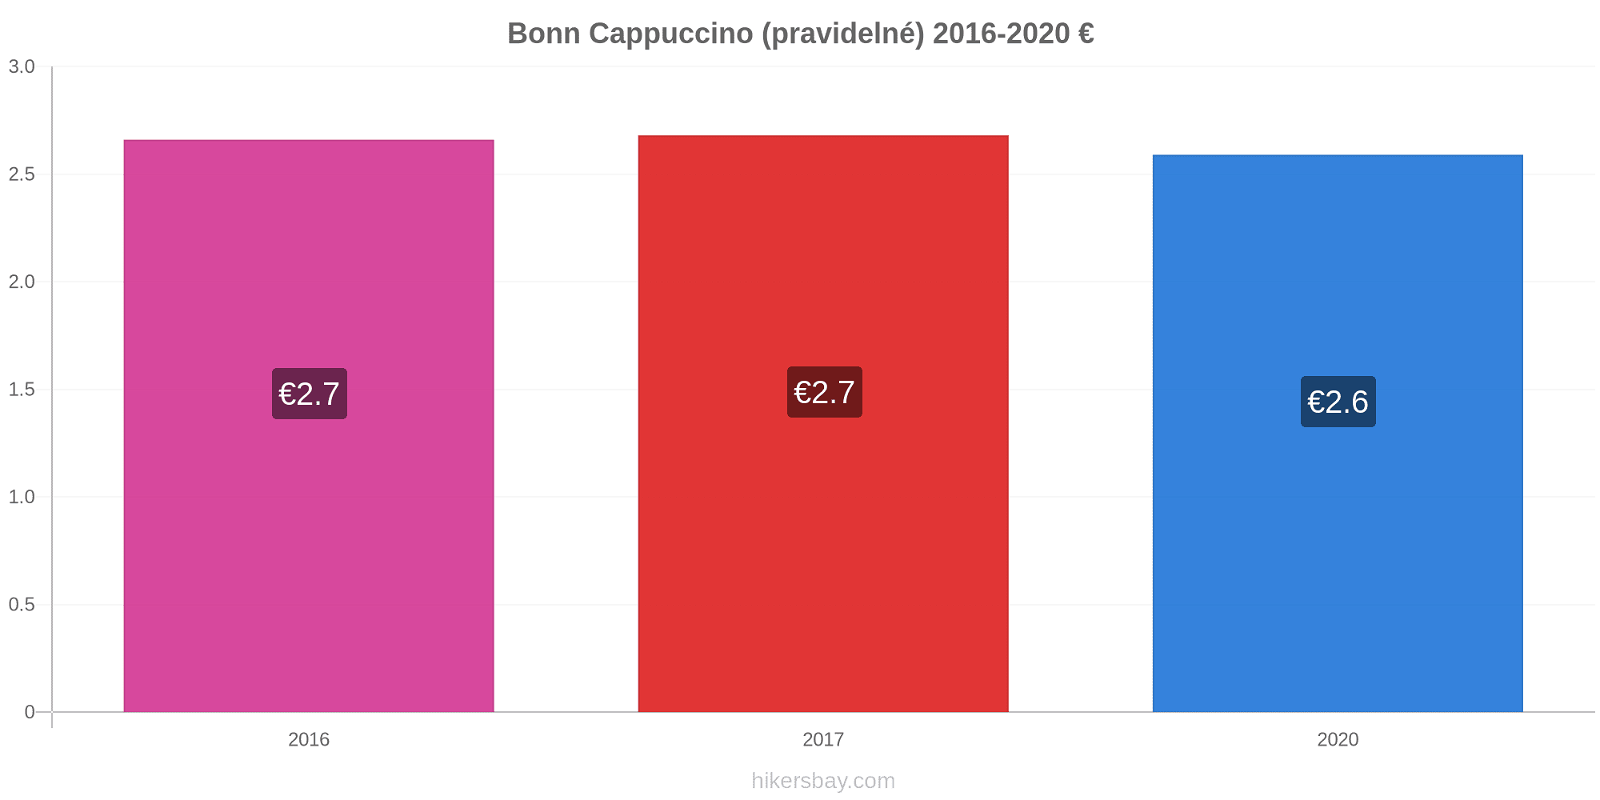 Bonn změny cen Cappuccino (pravidelné) hikersbay.com